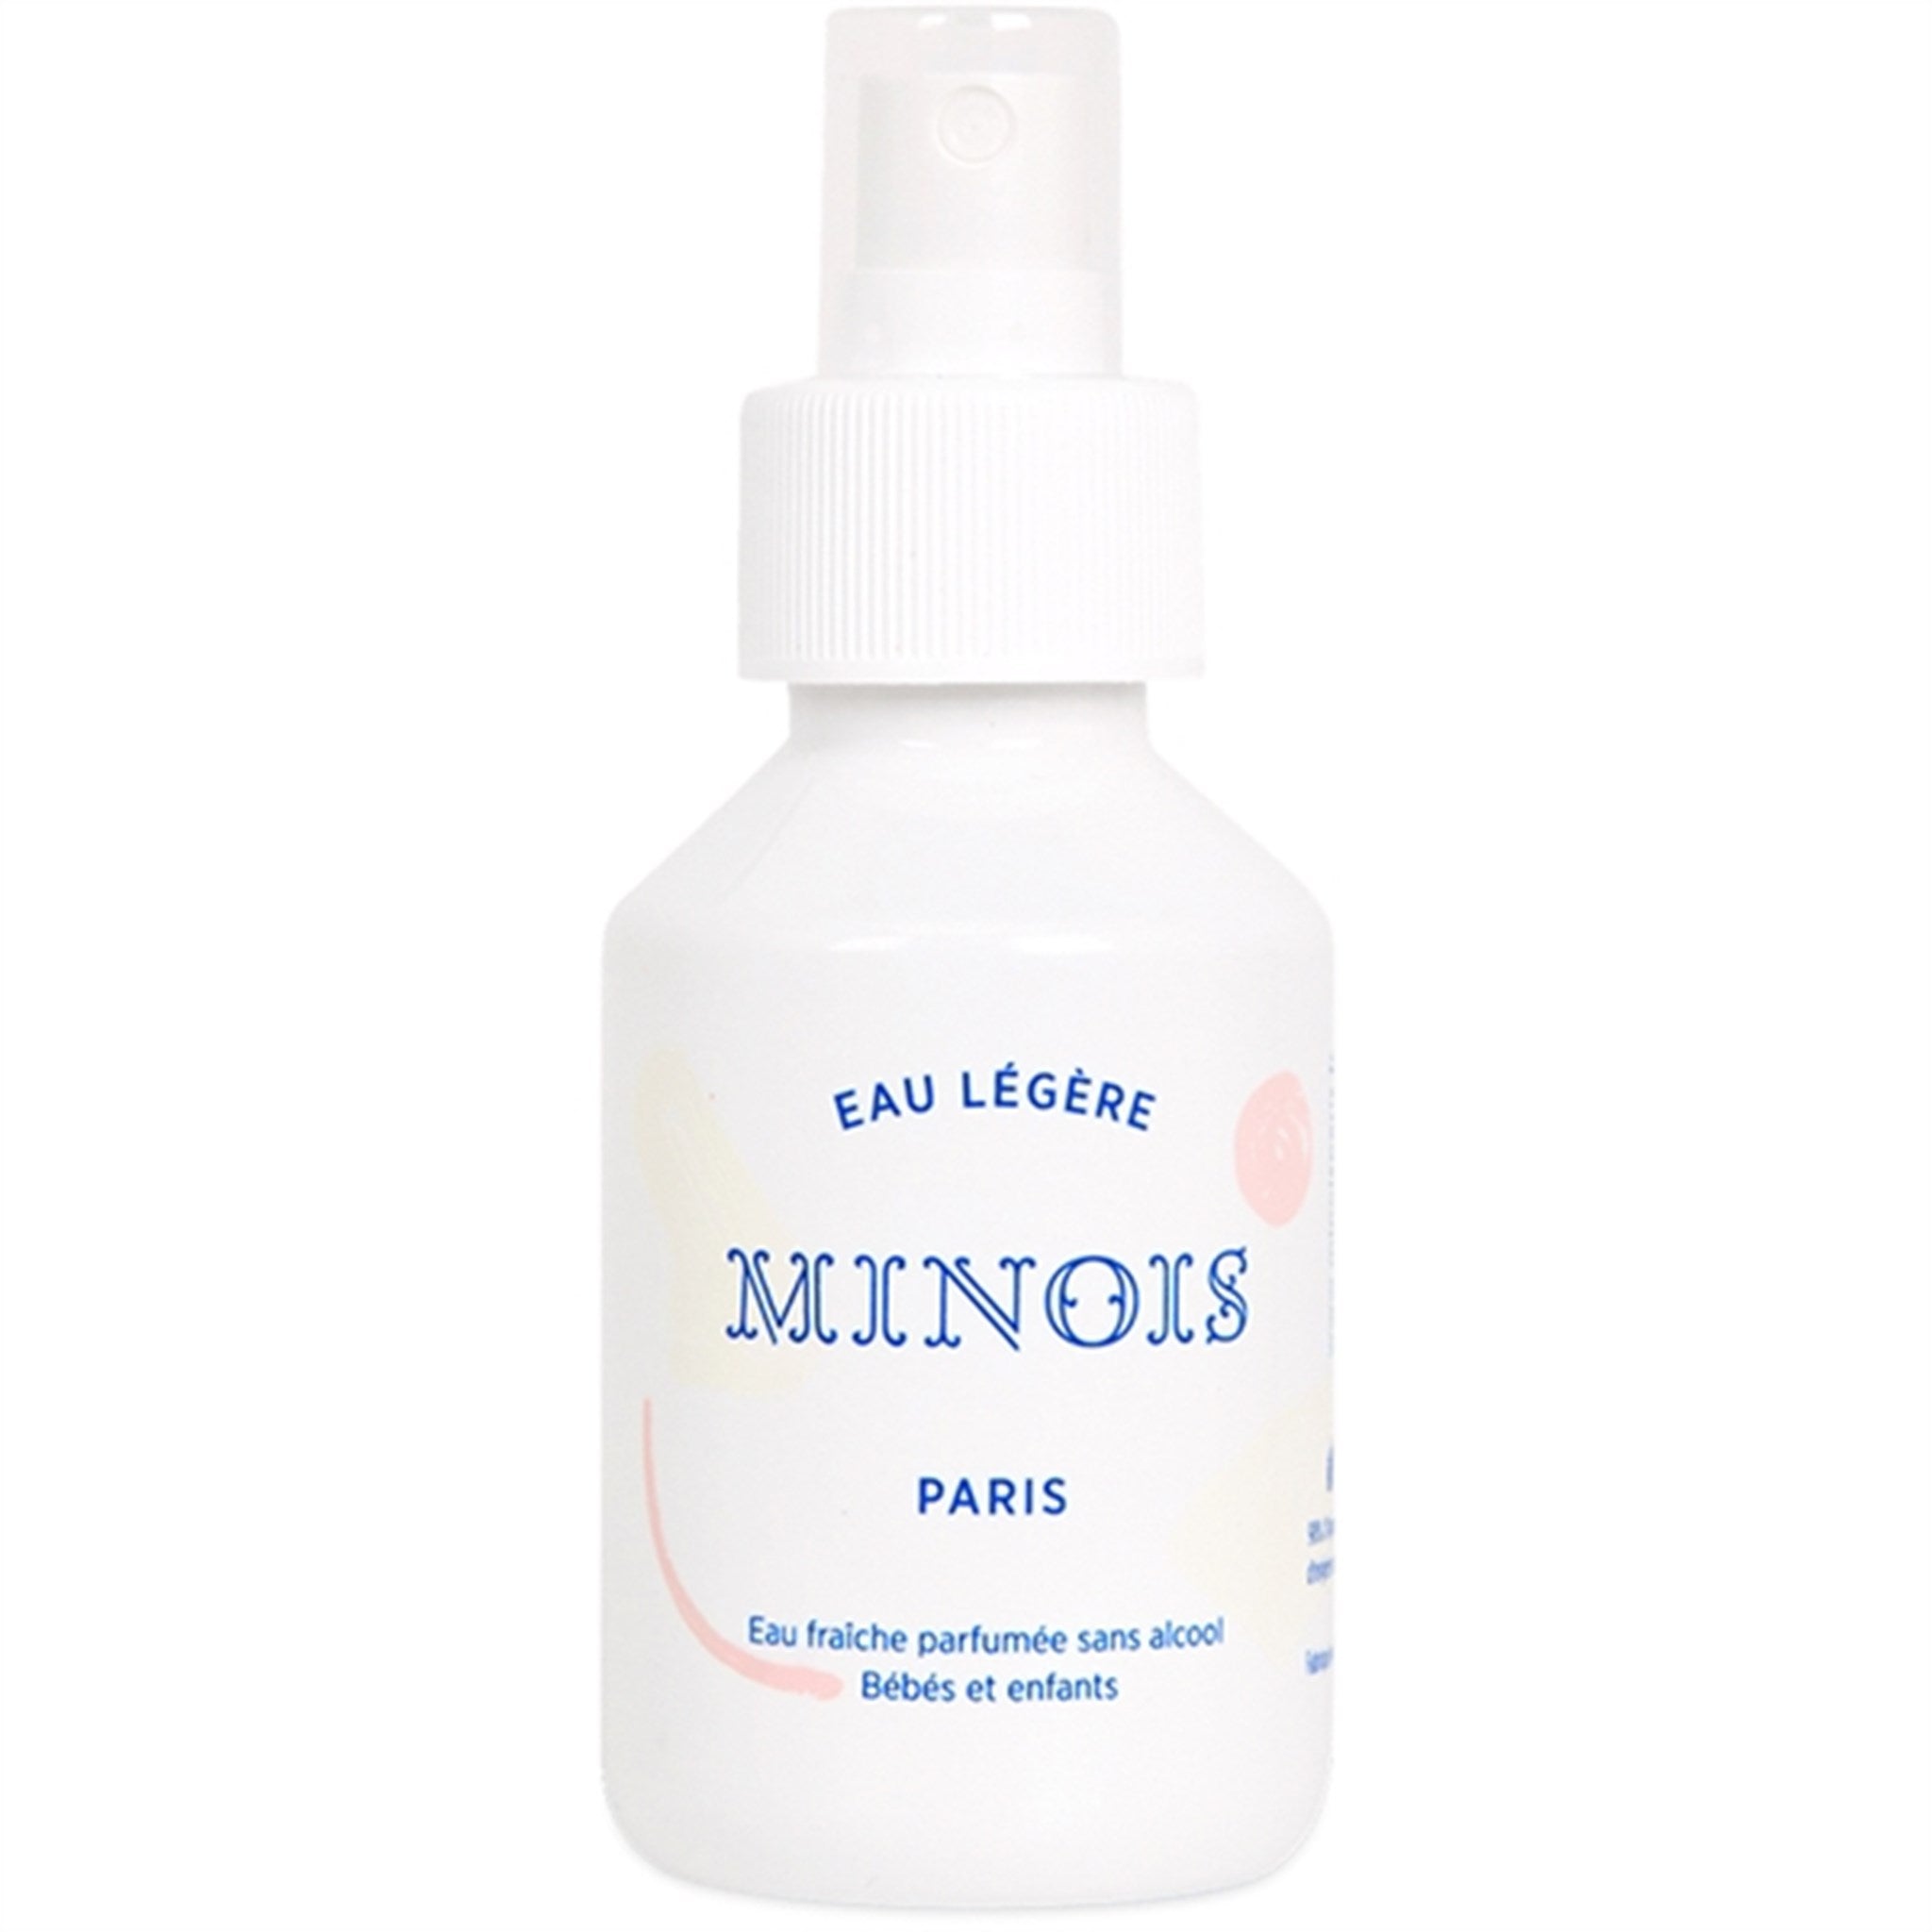 Minois Paris Gentle Cream 100ml